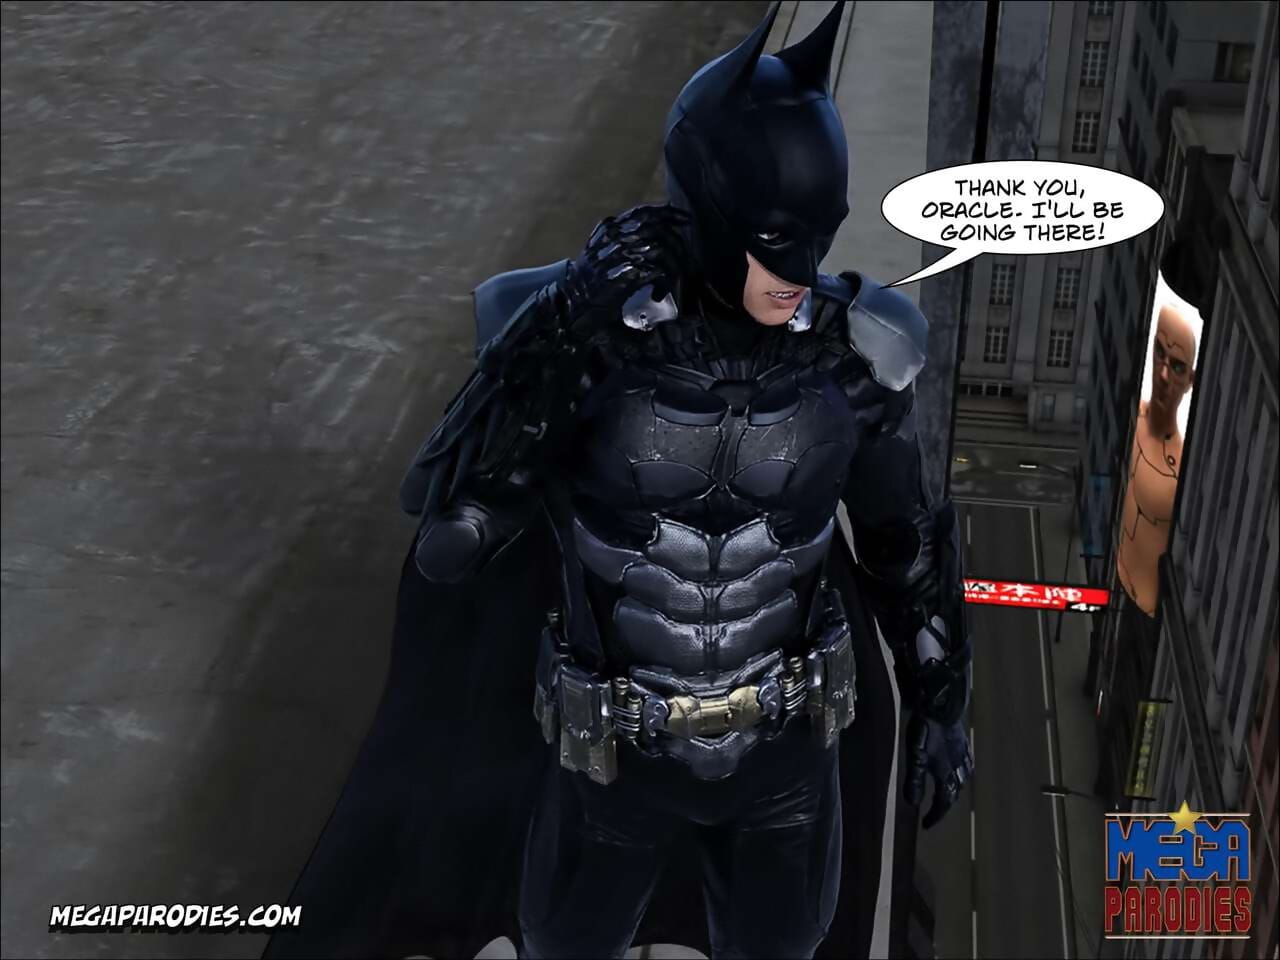 Mega Parodies Comics Collection batman page 1